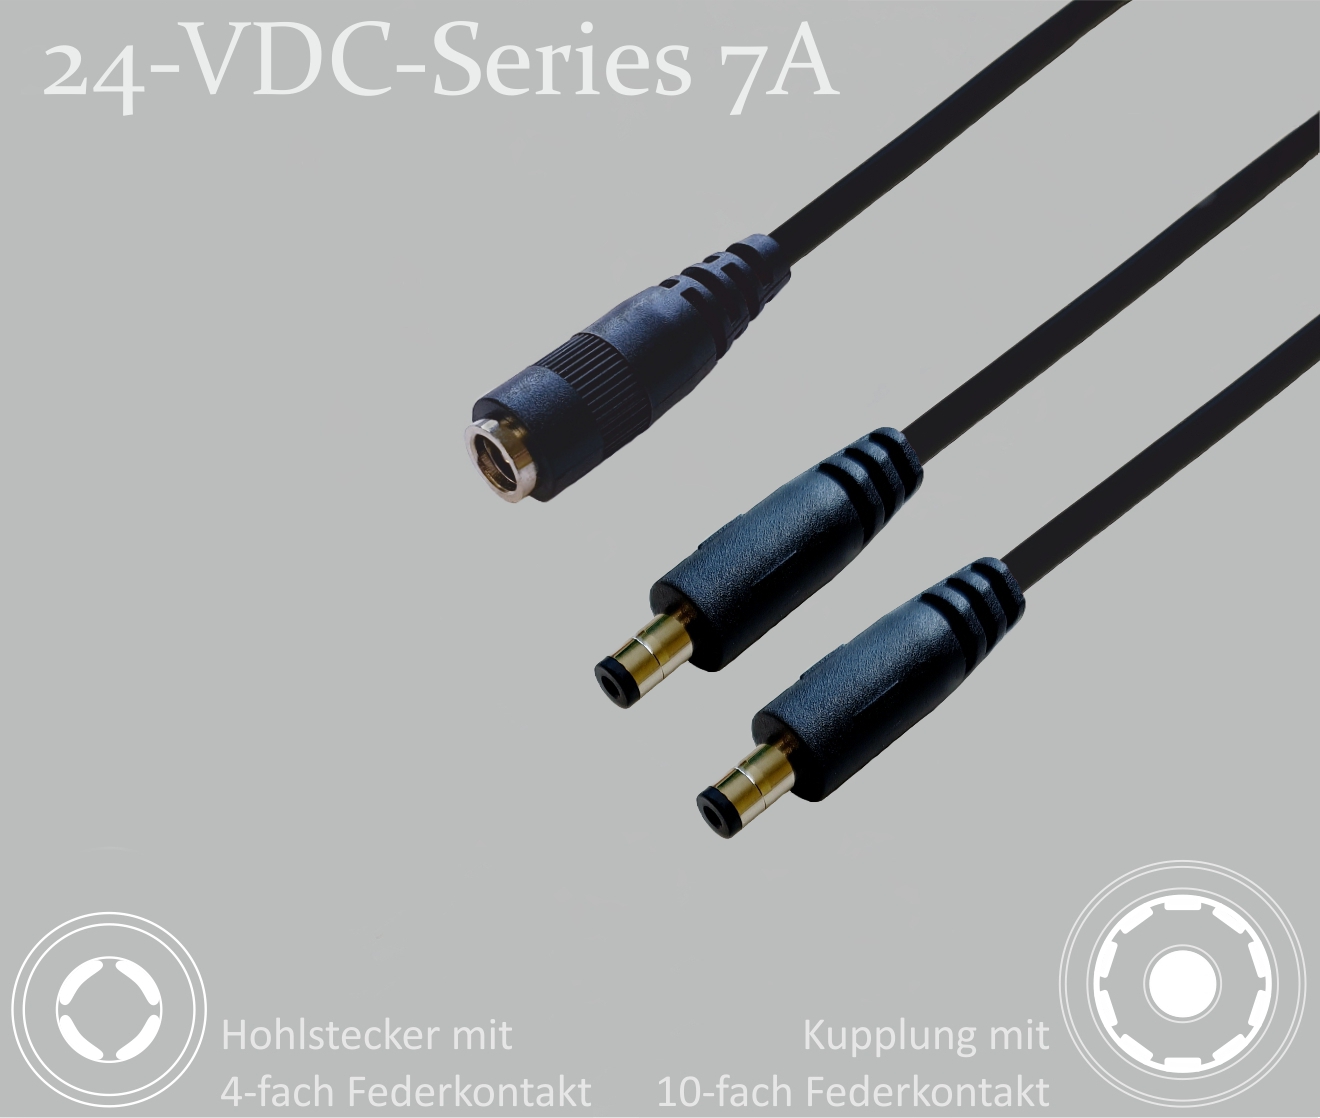 24-VDC-Series 7A, DC-Verteiler 1x DC-Kupplung mit 10-Federkontakt auf 2x DC-Stecker mit 4-Federkontakt,  2,5x5,5mm, Rundkabel 2x0,5mm², schwarz, 0,3m